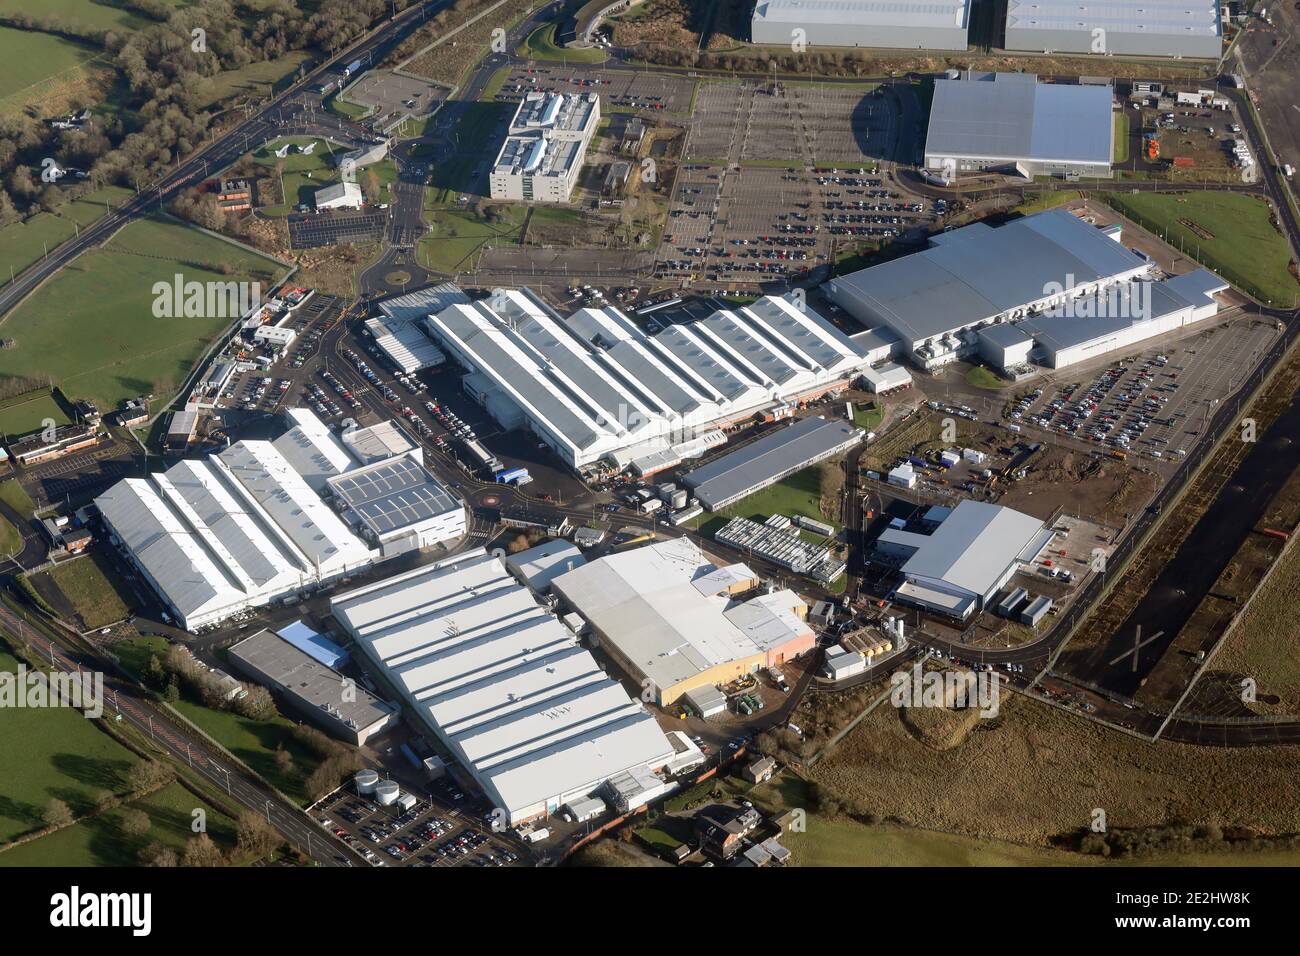 Luftaufnahme des Flugplatzes und des Technologieparks Samlesbury, der Heimat von BAE Systems, in Balderstone bei Blackburn, Lancashire, Großbritannien Stockfoto